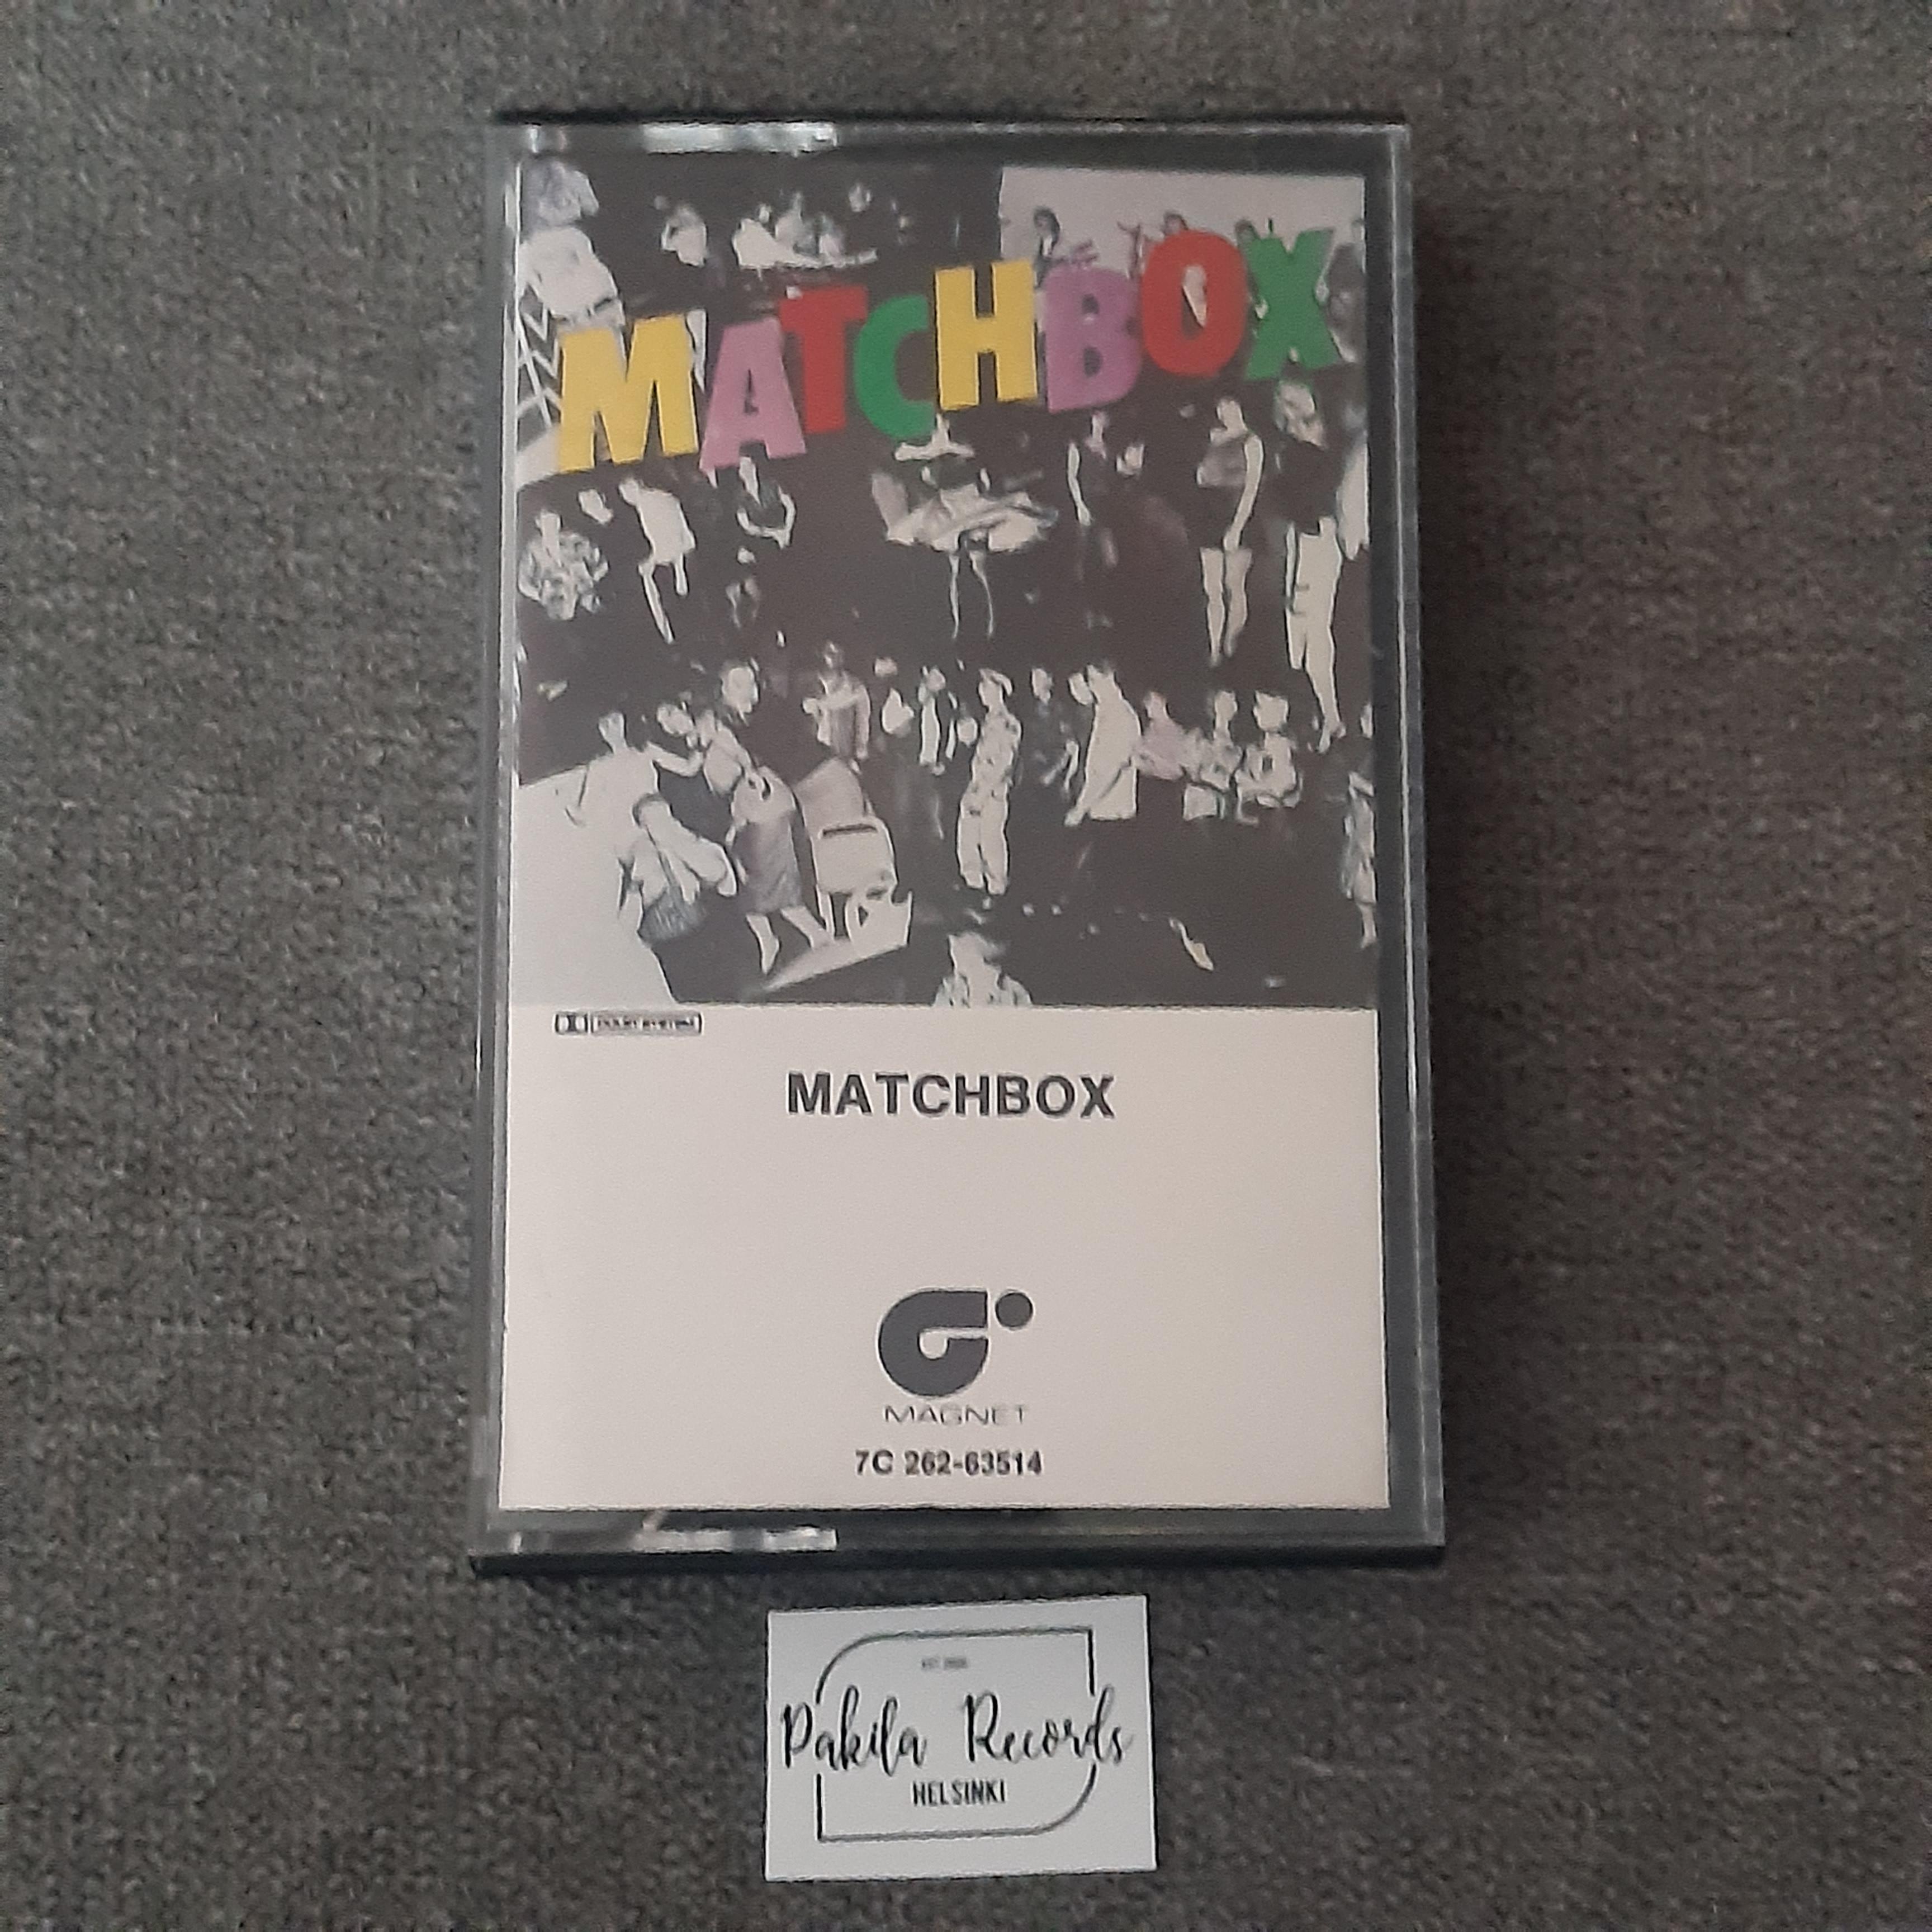 Matchbox - Matchbox - Kasetti (käytetty)